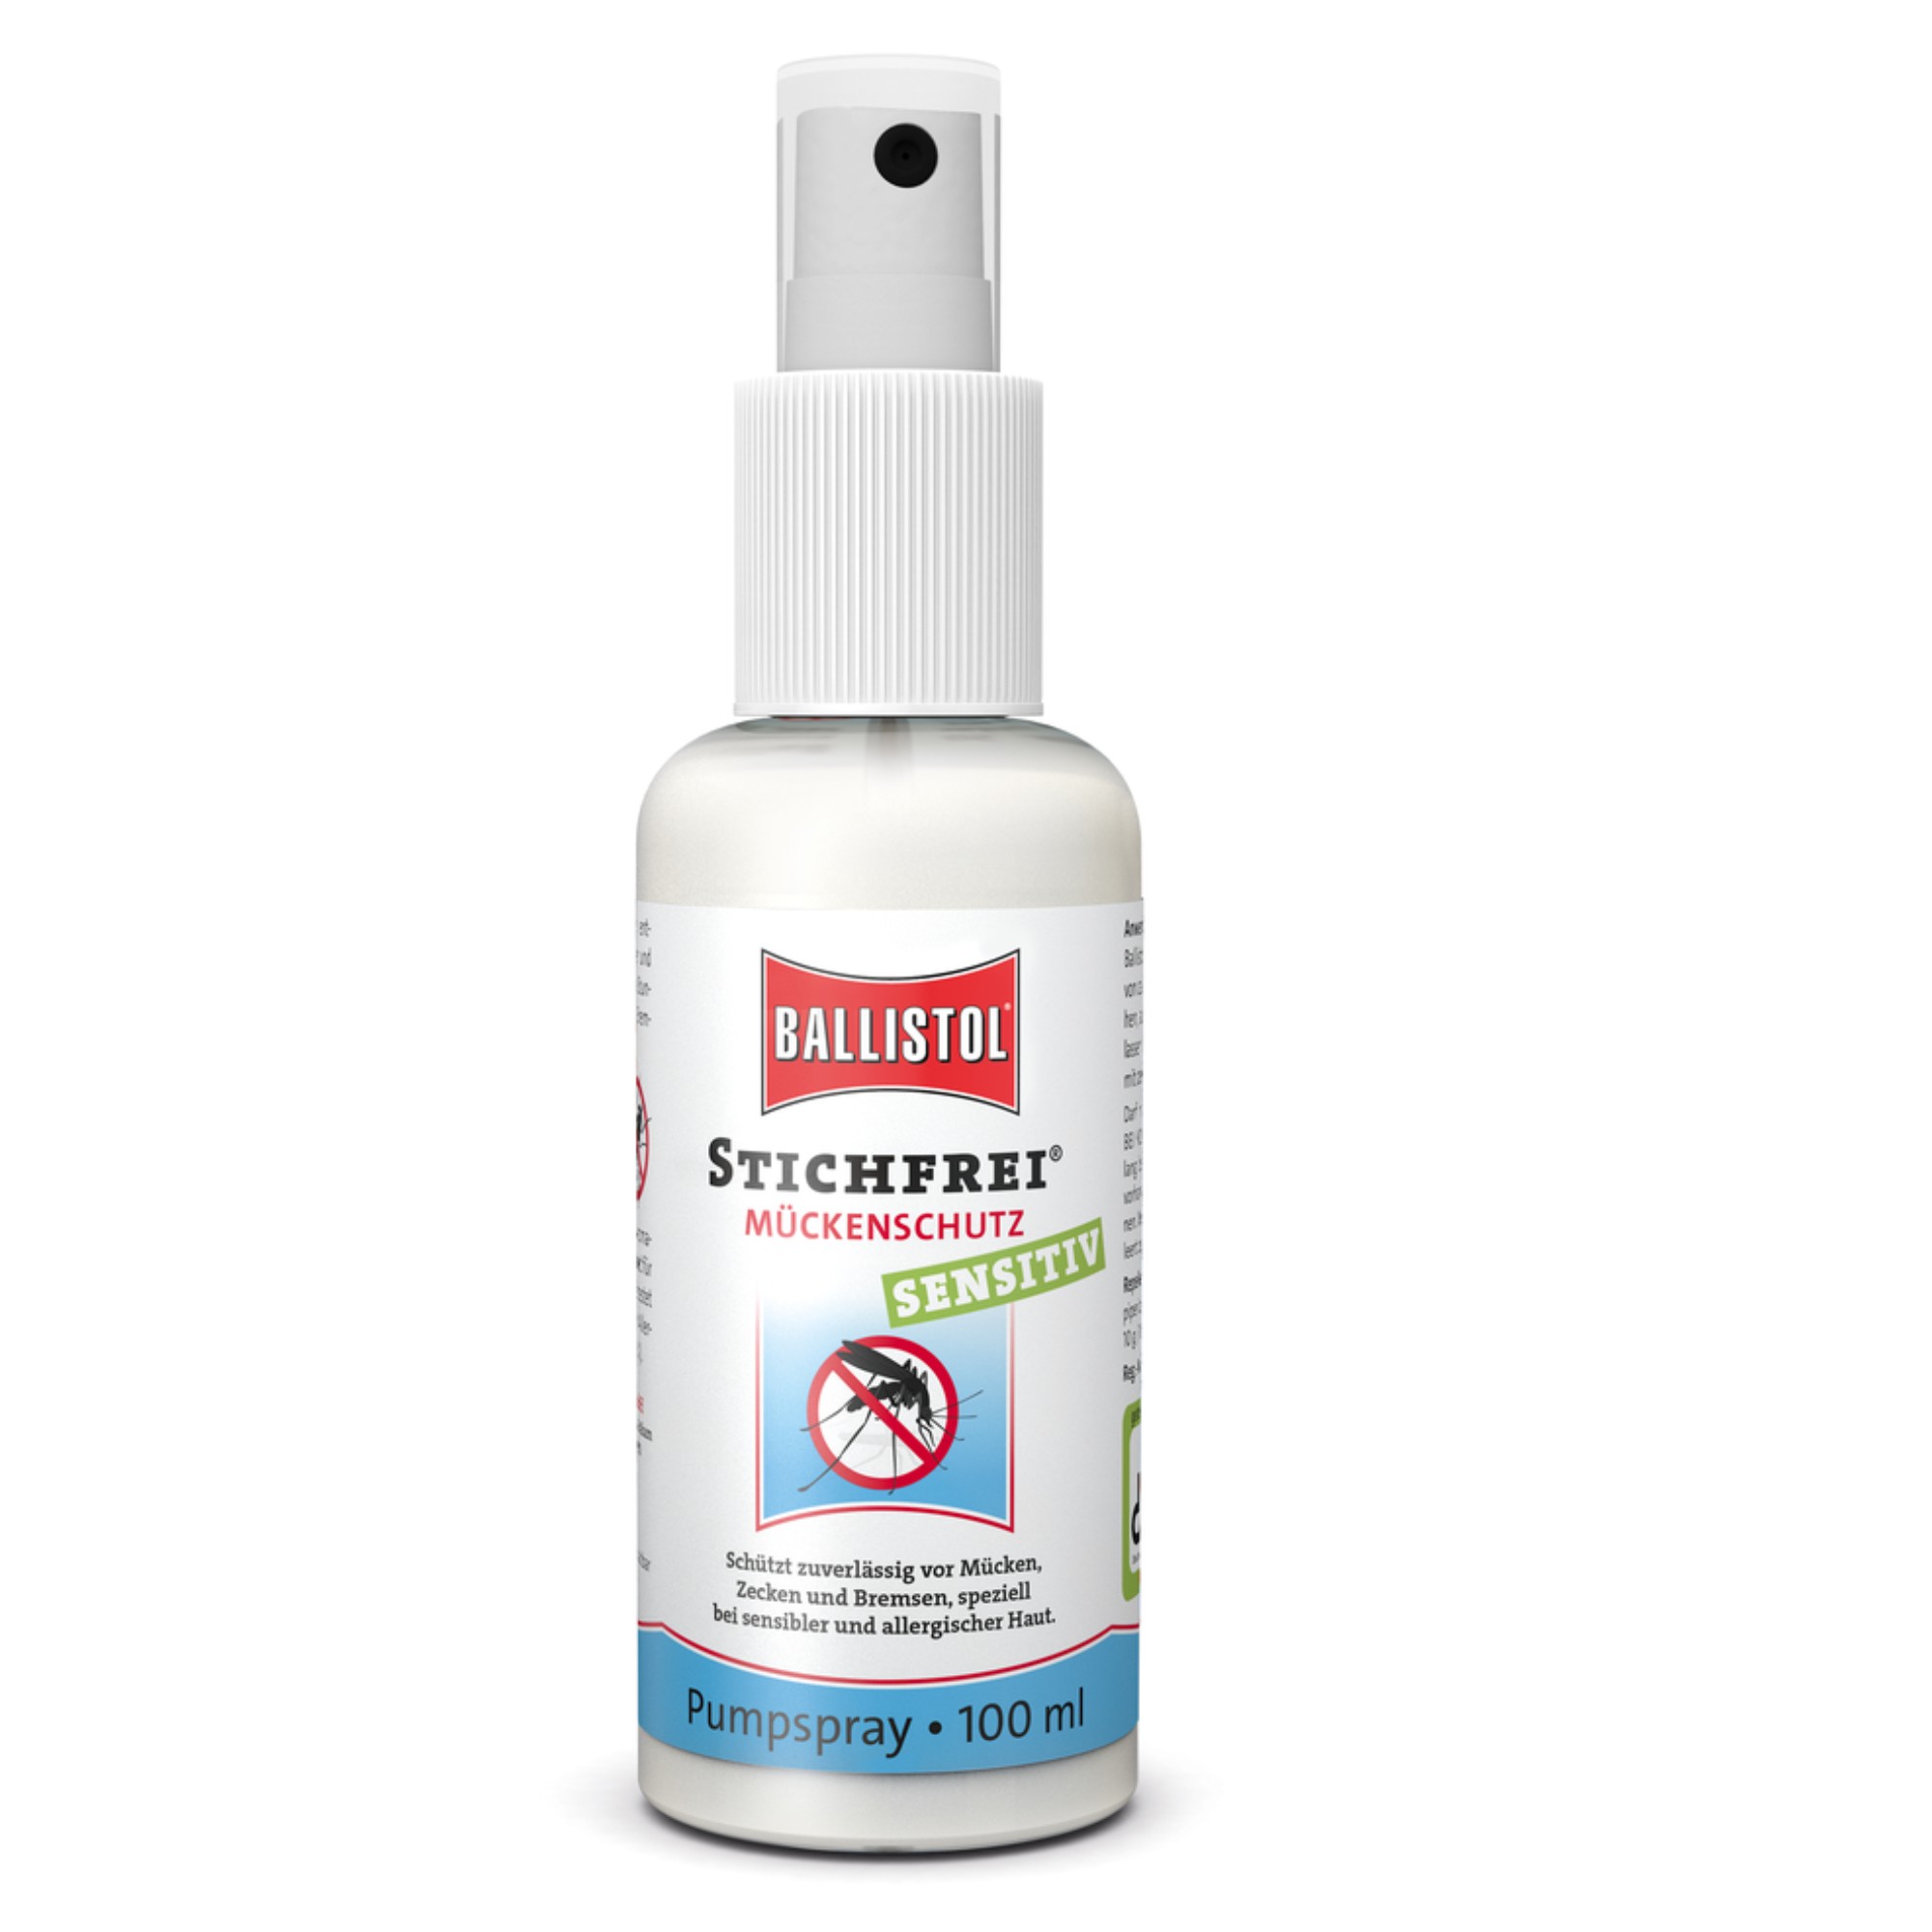 Ballistol Stichfrei Sensitiv Pump Spray 100 ml